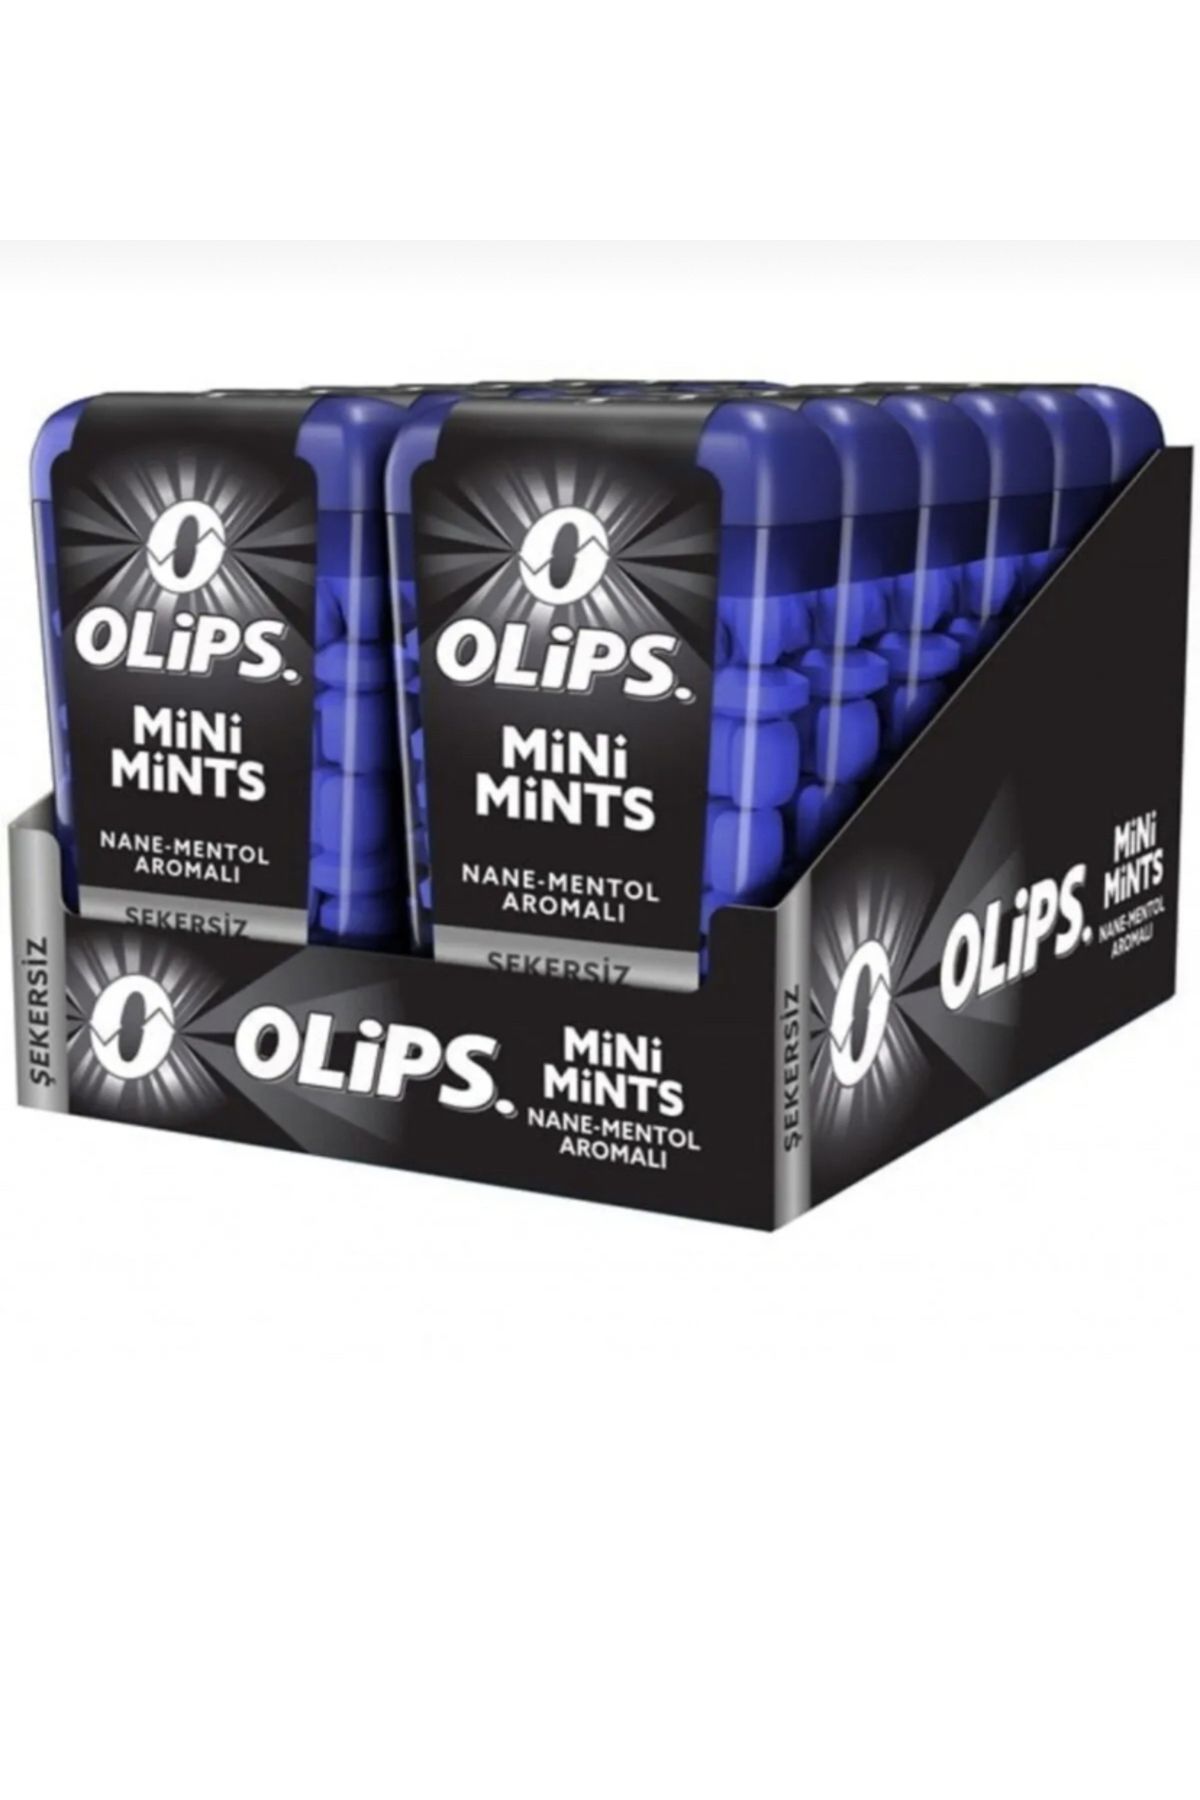 Olips Mini mints nane mentol aromalı şekersiz 1 kutu12 adet